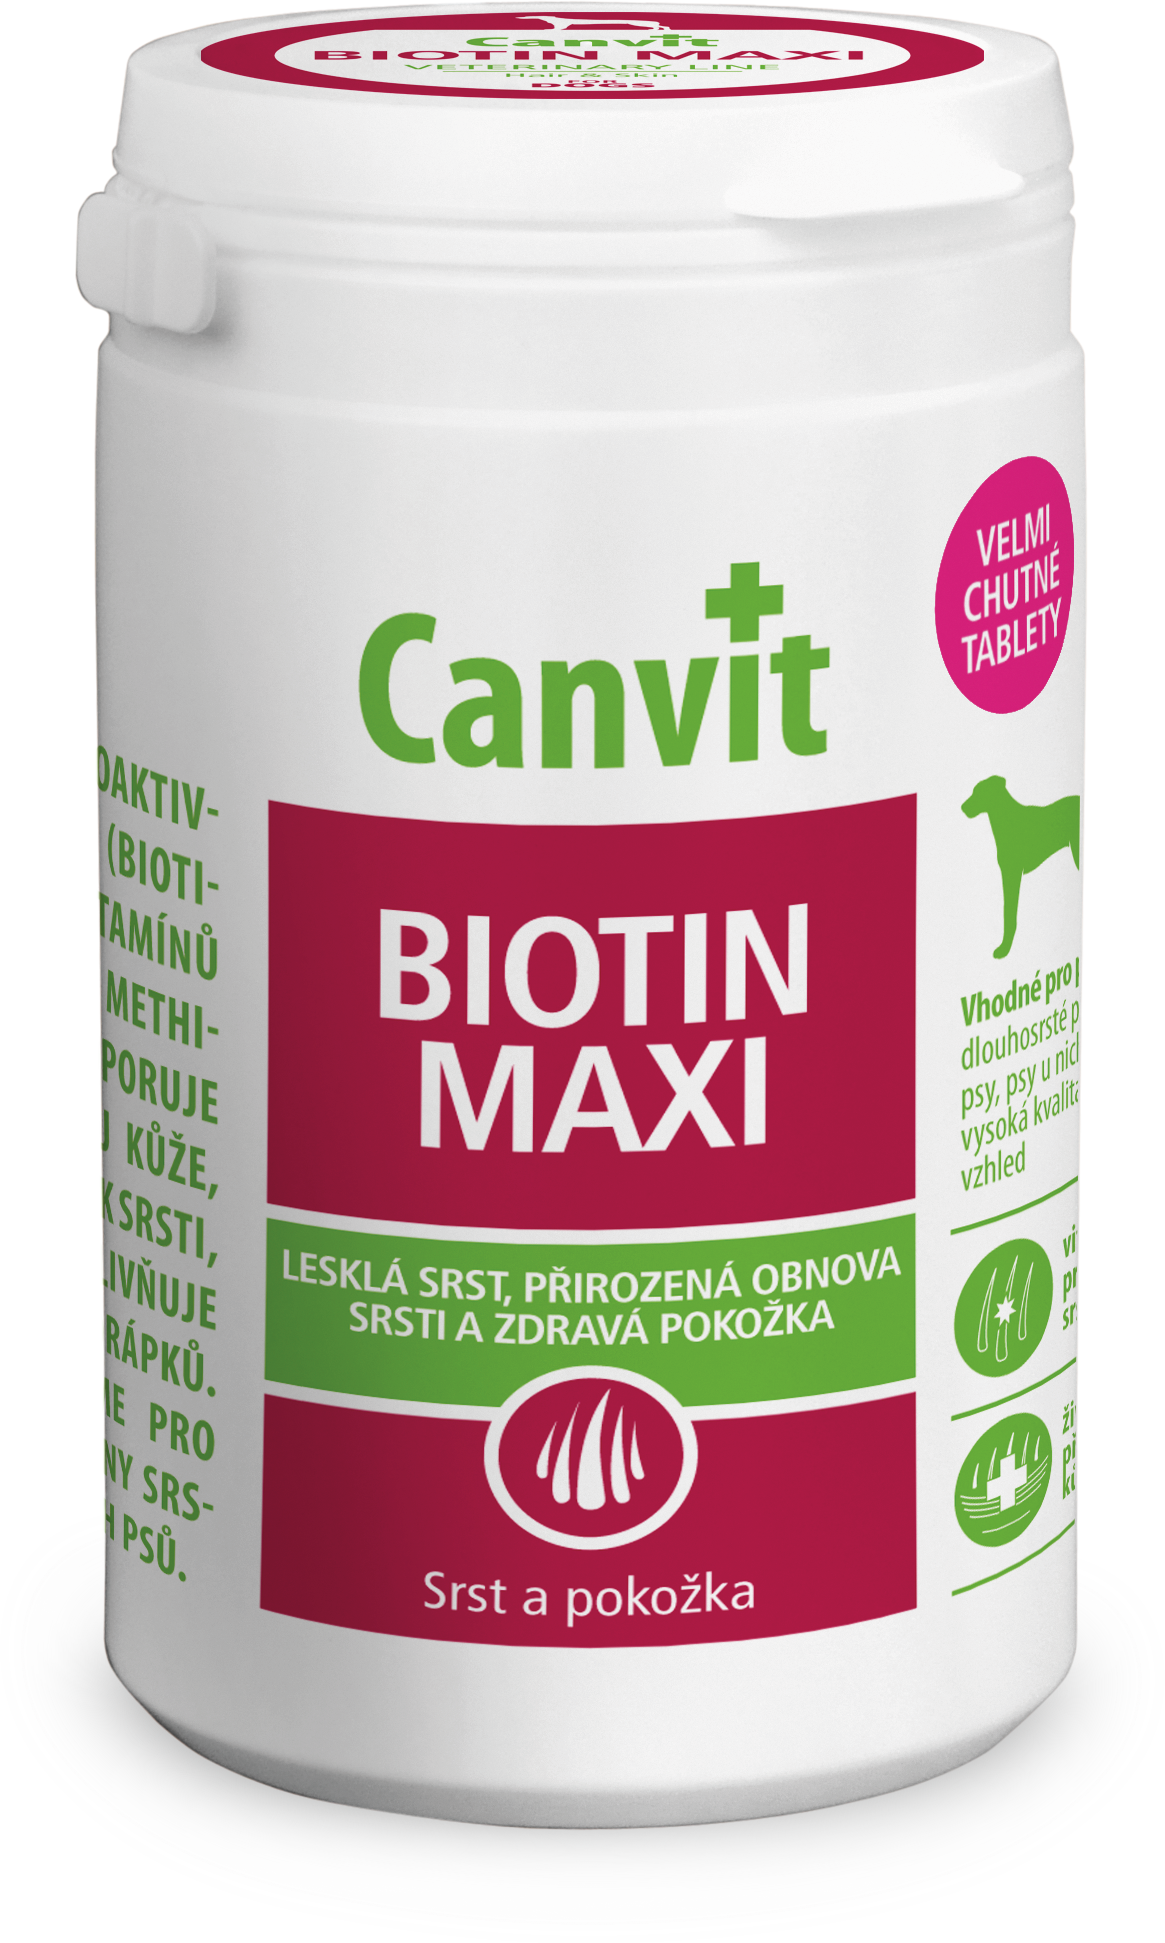 Canvit Biotin Maxi - Kliknutím zobrazíte detail obrázku.